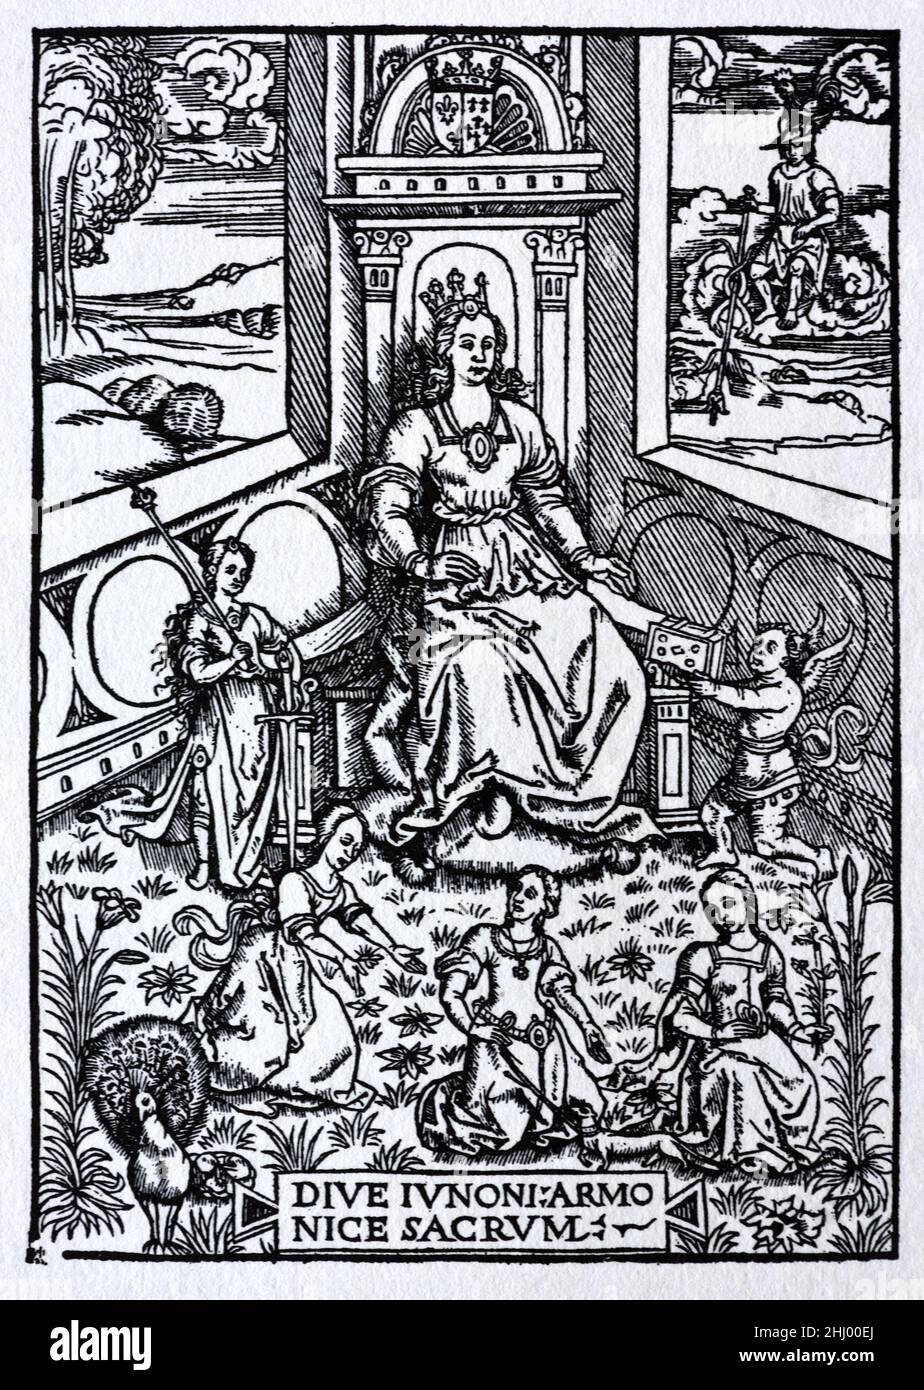 Anne von der Bretagne (1477-1514) Herzogin von der Bretagne und Königin Consort von Frankreich, dargestellt als die römische Göttin Juno auf einem Thron sitzend, wie Jean Lemaire de Belges (c1473-1525) in seinen Illustrationen des Gaules et Singularitez de Troye, veröffentlicht in den Jahren 1511-1512, dargestellt hat. Anfang c16th Holzschnitt, Gravur oder Illustration. Stockfoto